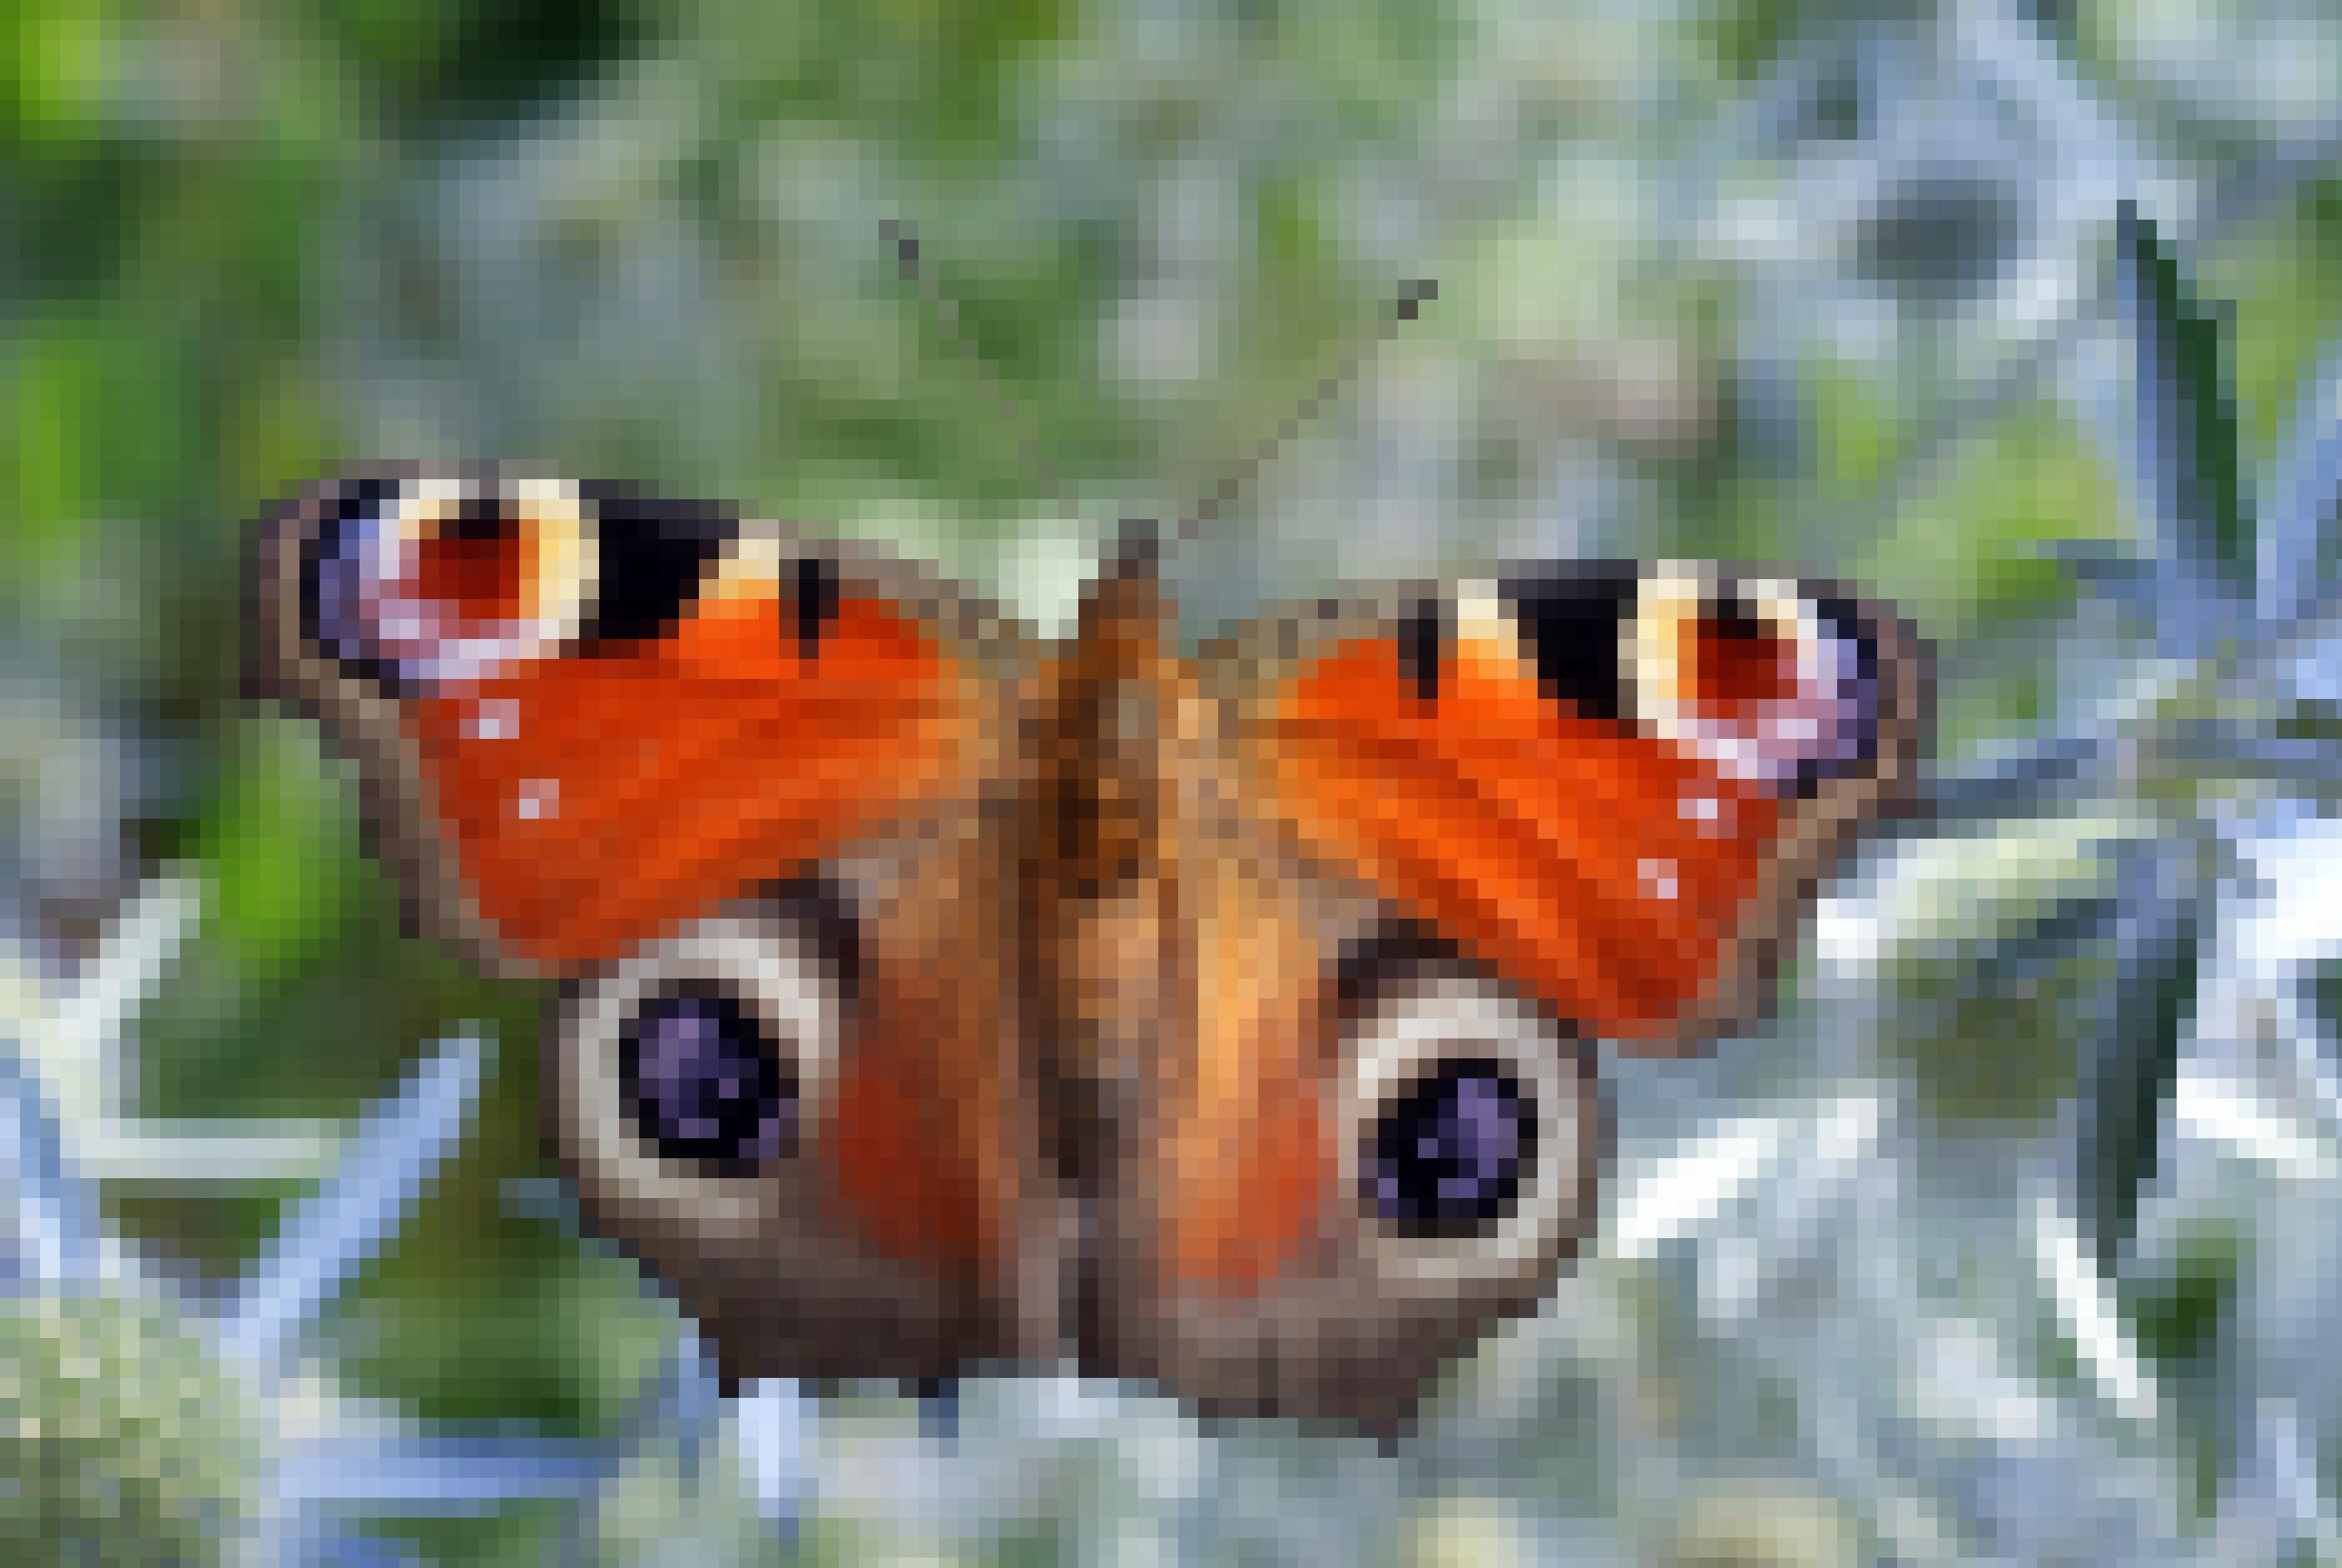 Das Bild zeigt das Tagpfauenauge, einen Schmetterling auf dessen Flügeln jeweils zwei Formen sind, die wie Augen wirken.